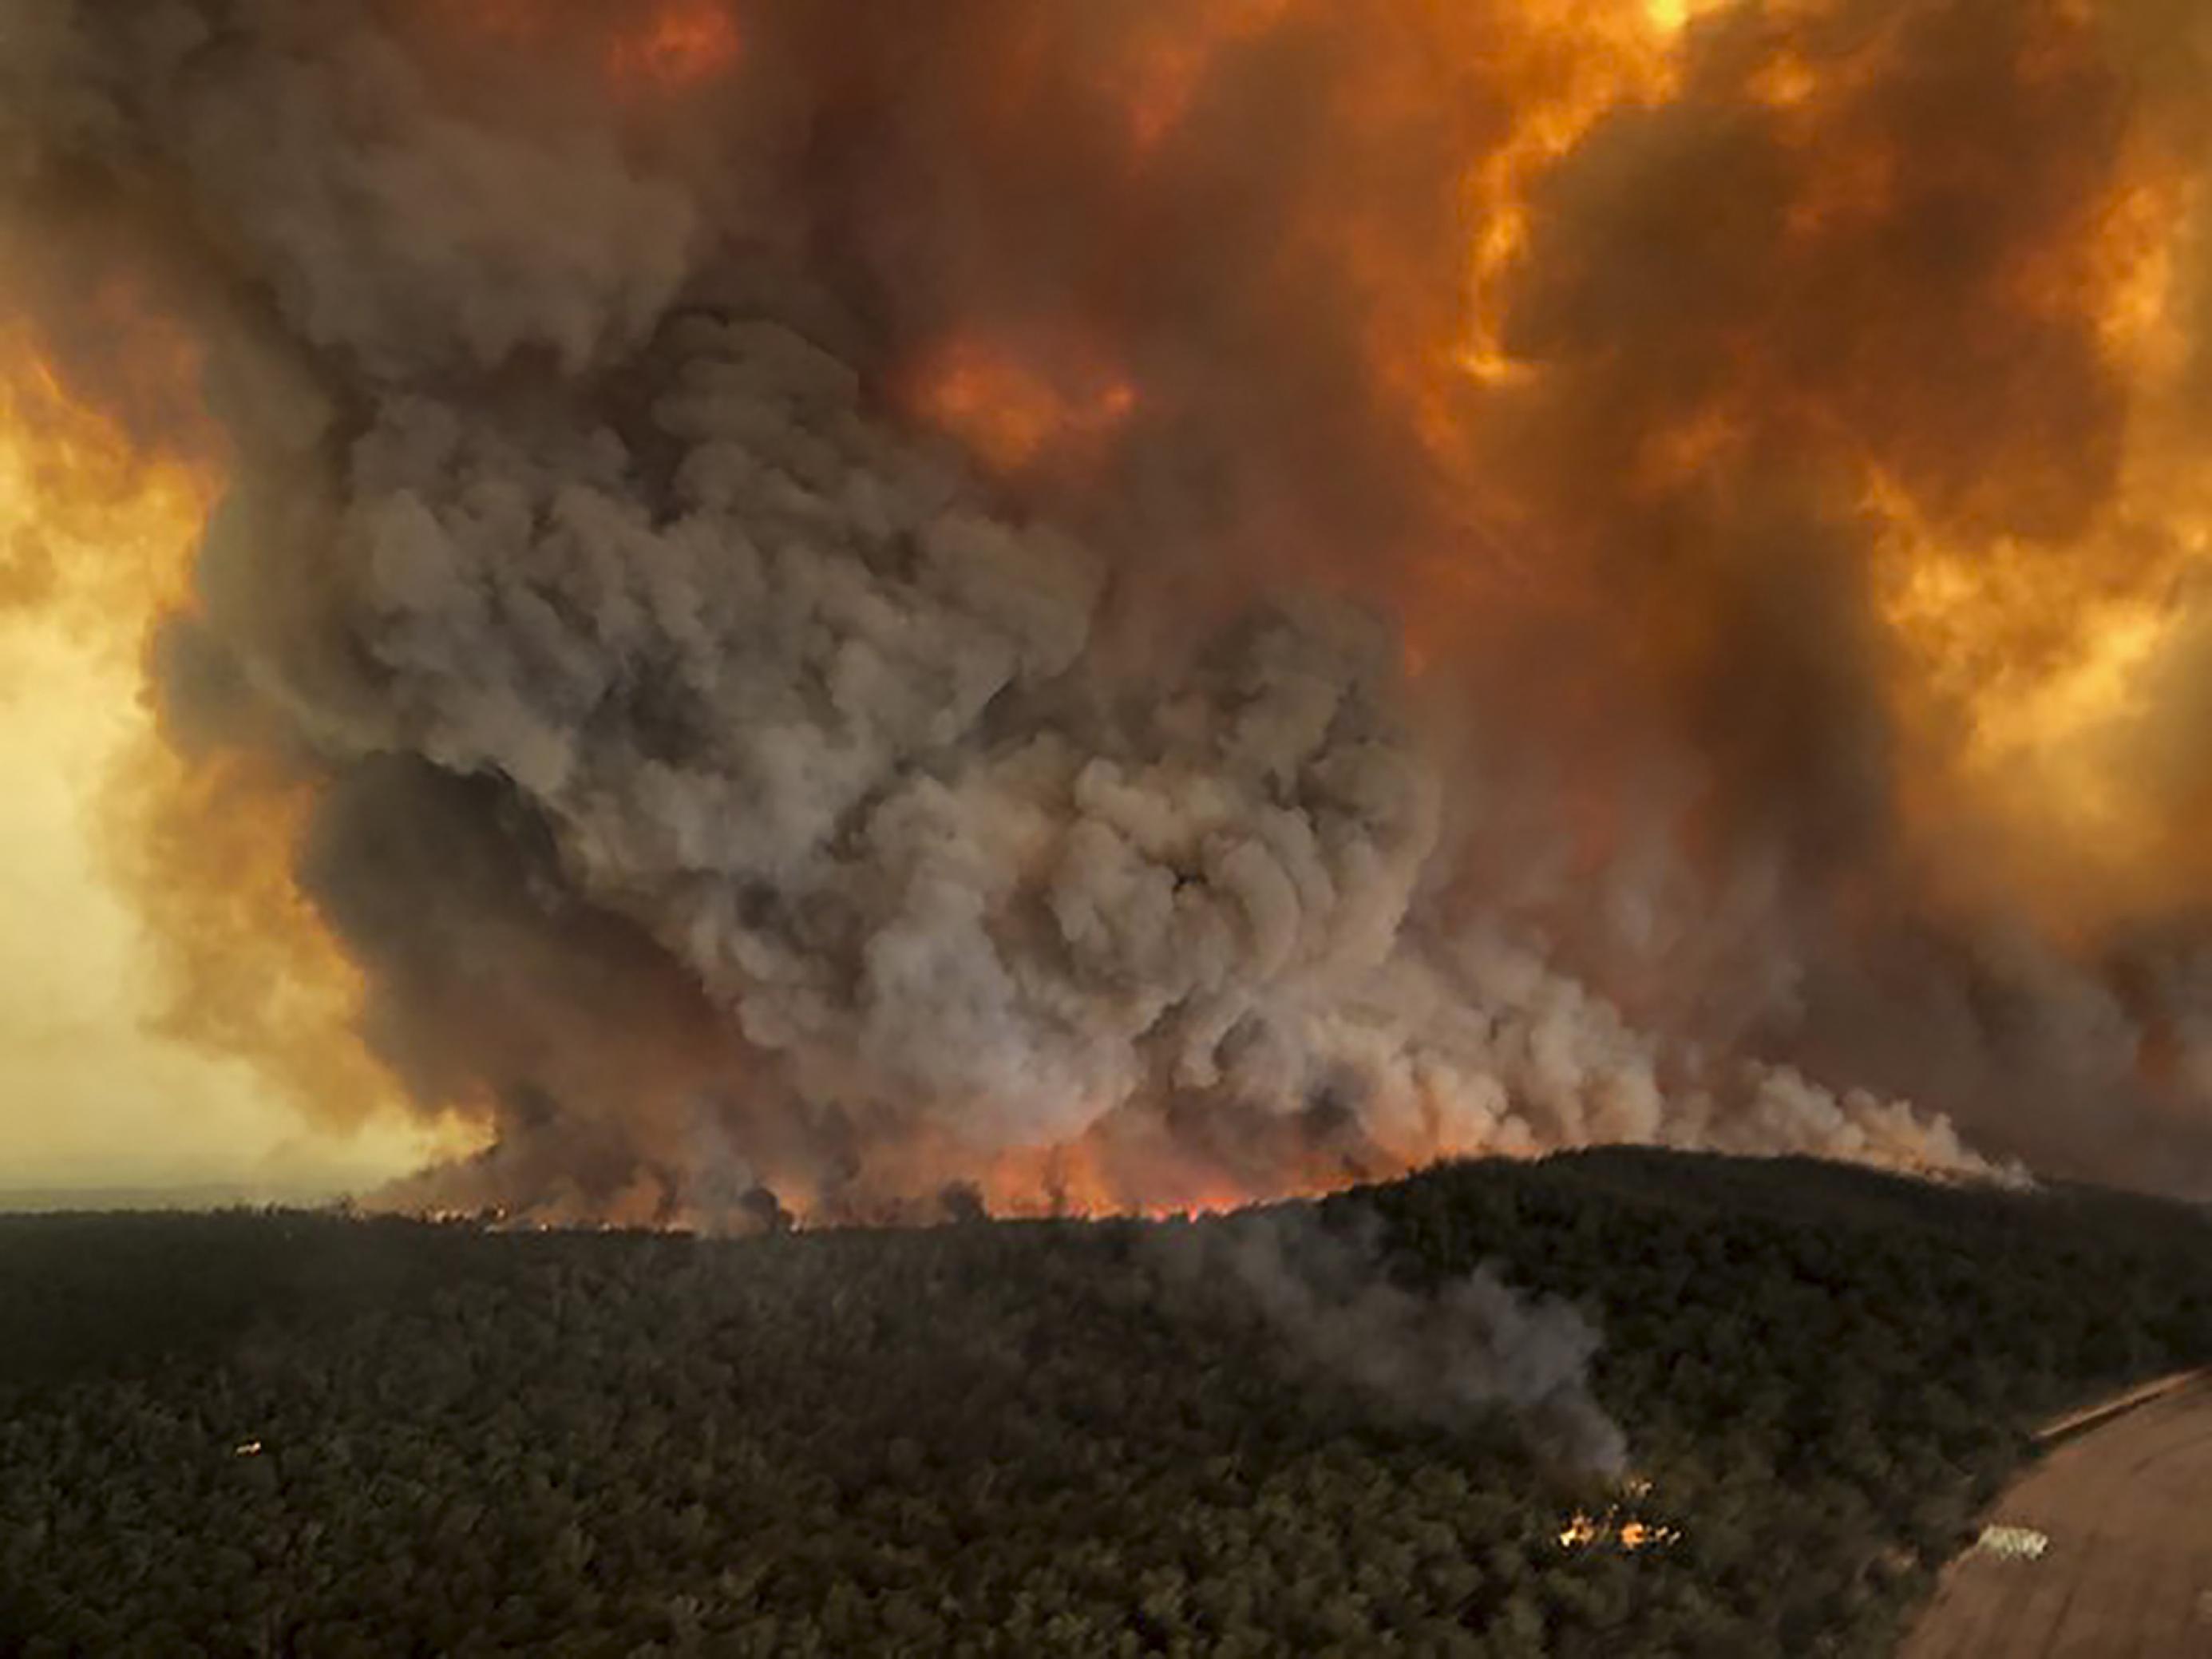 Das Bild ist aus einem Flugzeug oder Hubschrauber heraus aufgenommen. Es zeigt im Vordergrund einen grünen Wald, der aber im hinteren Teil des Bilds in Flammen steht.